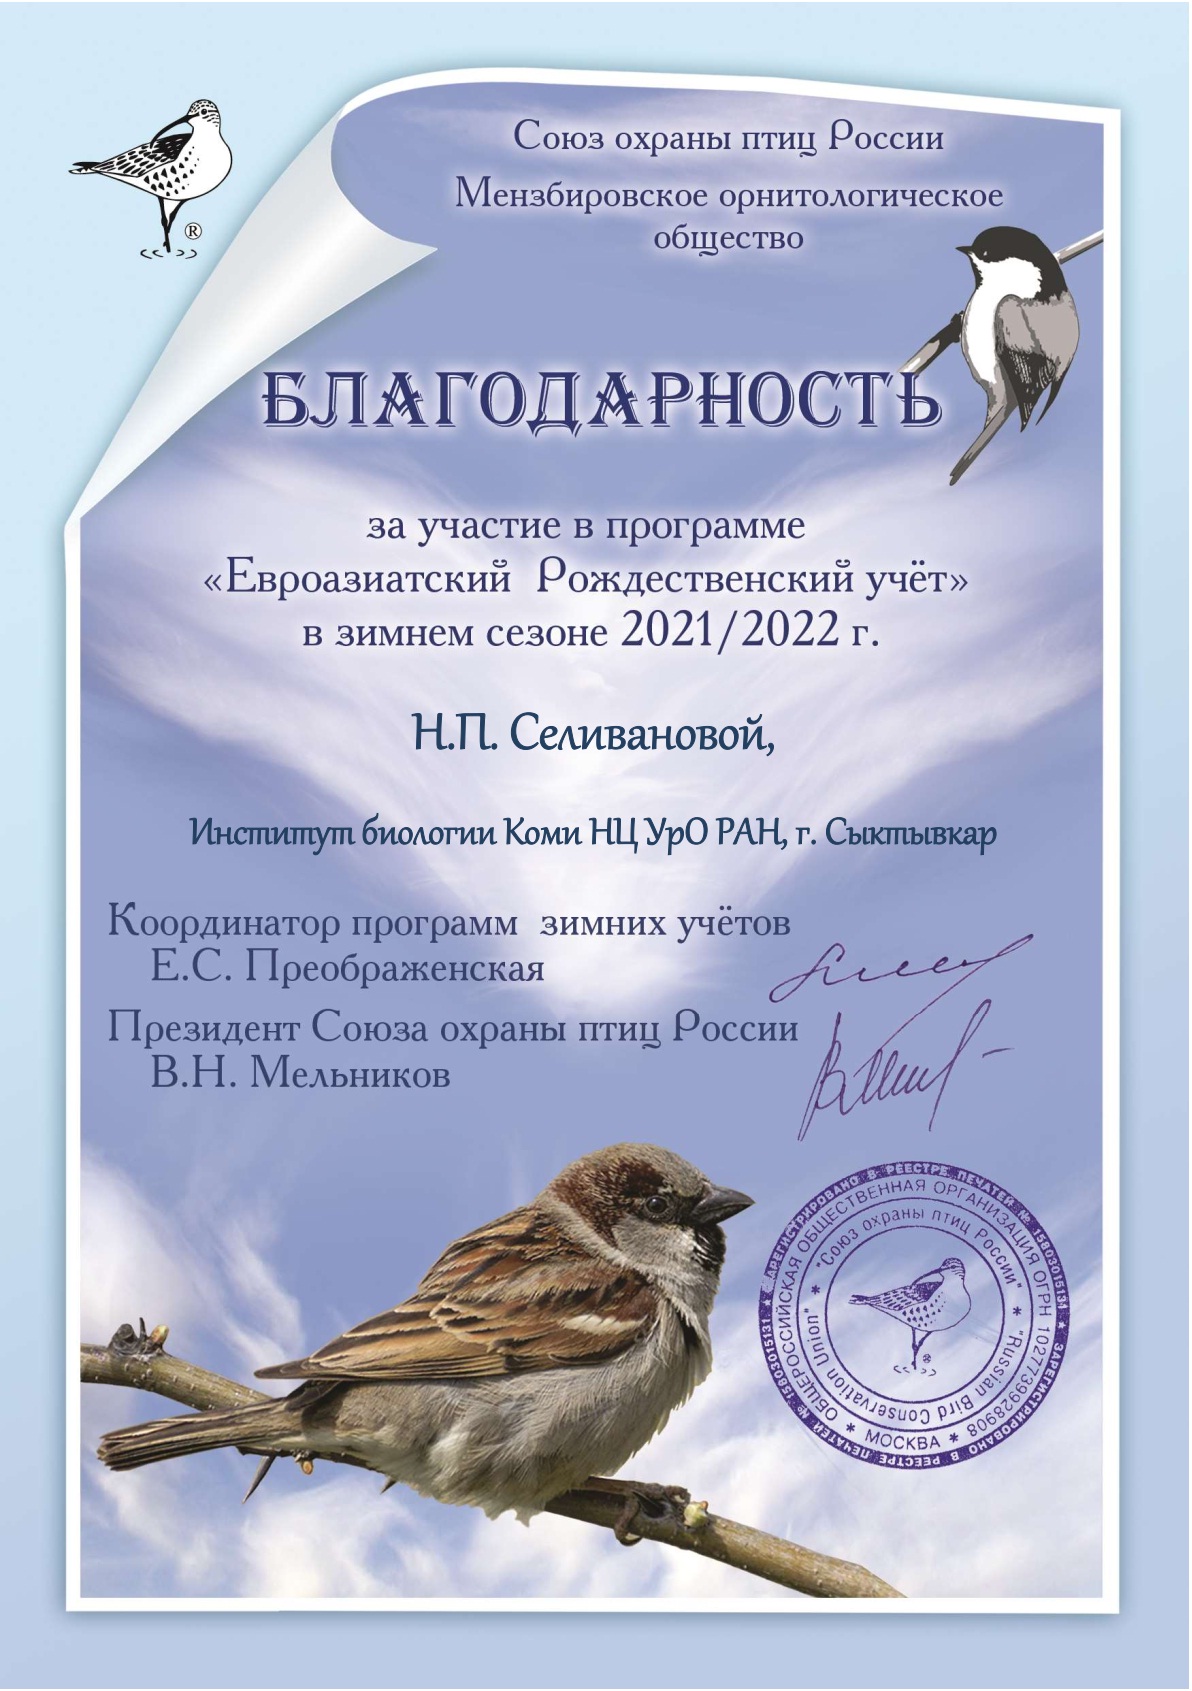 Благодарность Селивановой Н.П. за участие в программе "Евроазиатский Рождественский учет в зимнем сезоне 2021/2022 г.